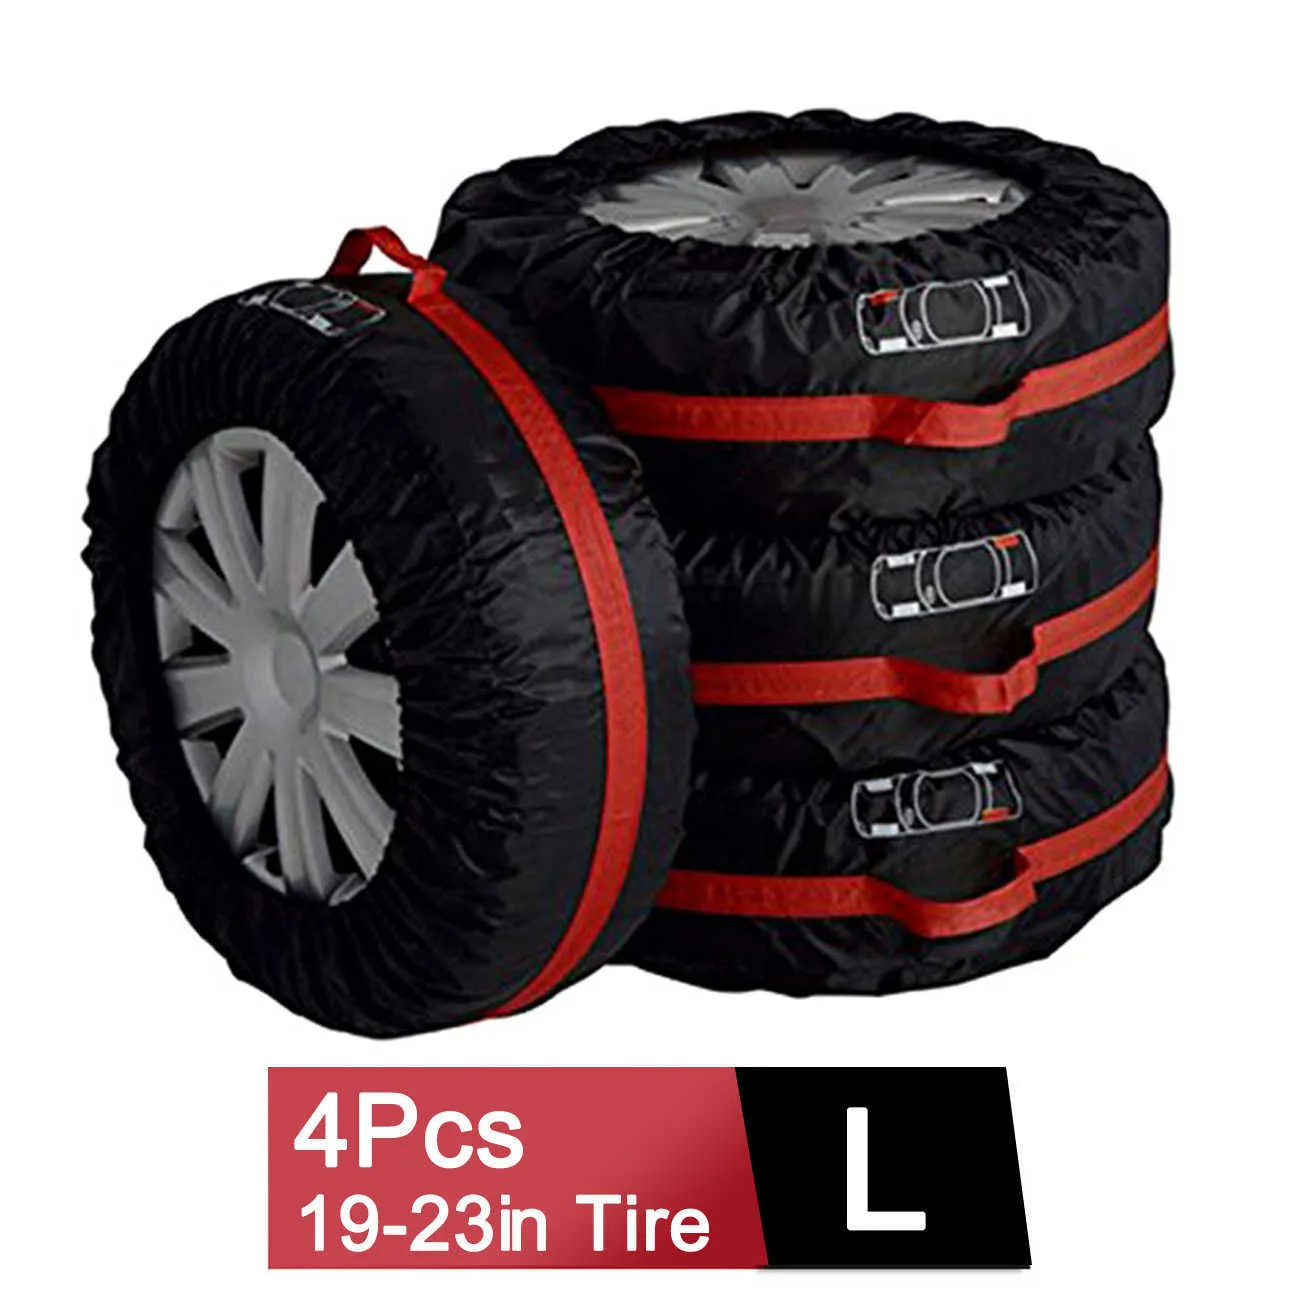 4 peças de capa de pneu sobressalente para carro de poliéster para pneus de roda de carro, sacos de armazenamento, acessórios para pneus de veículos, protetor à prova de poeira, estilo de carro281O